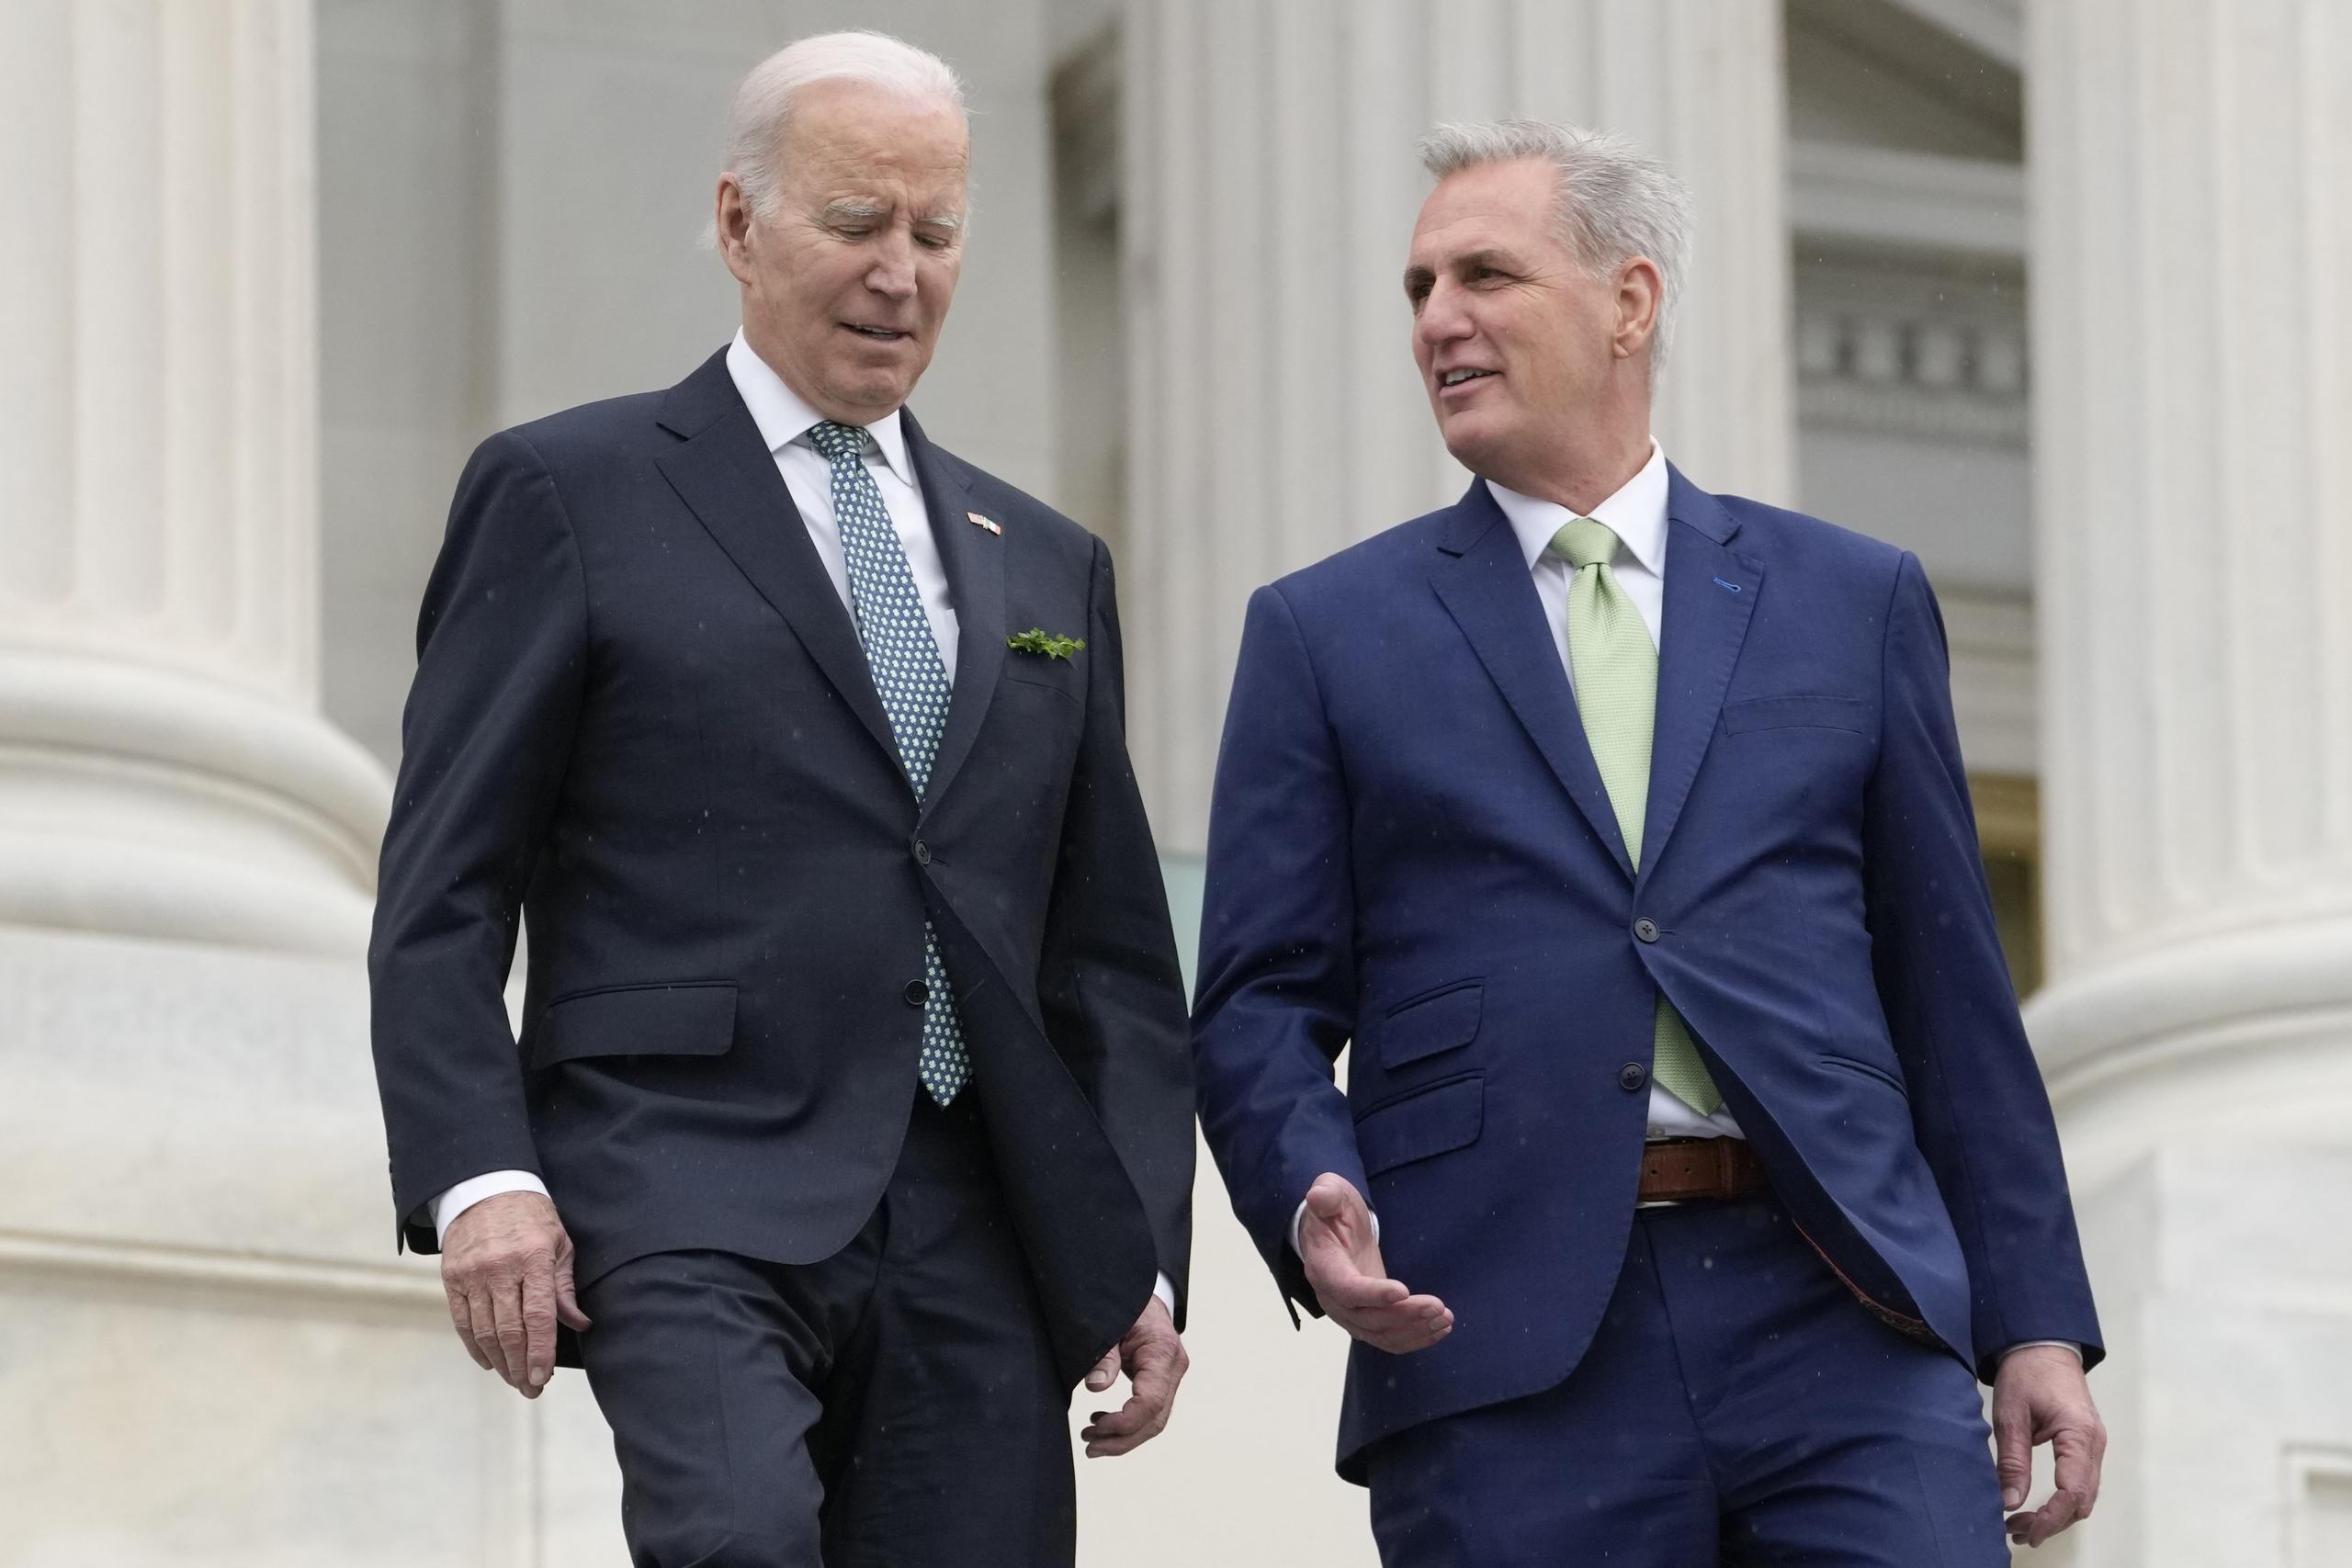 El presidente Joe Biden y el presidente de la Cámara de Representantes, Kevin McCarthy, en el Capitolio federal.